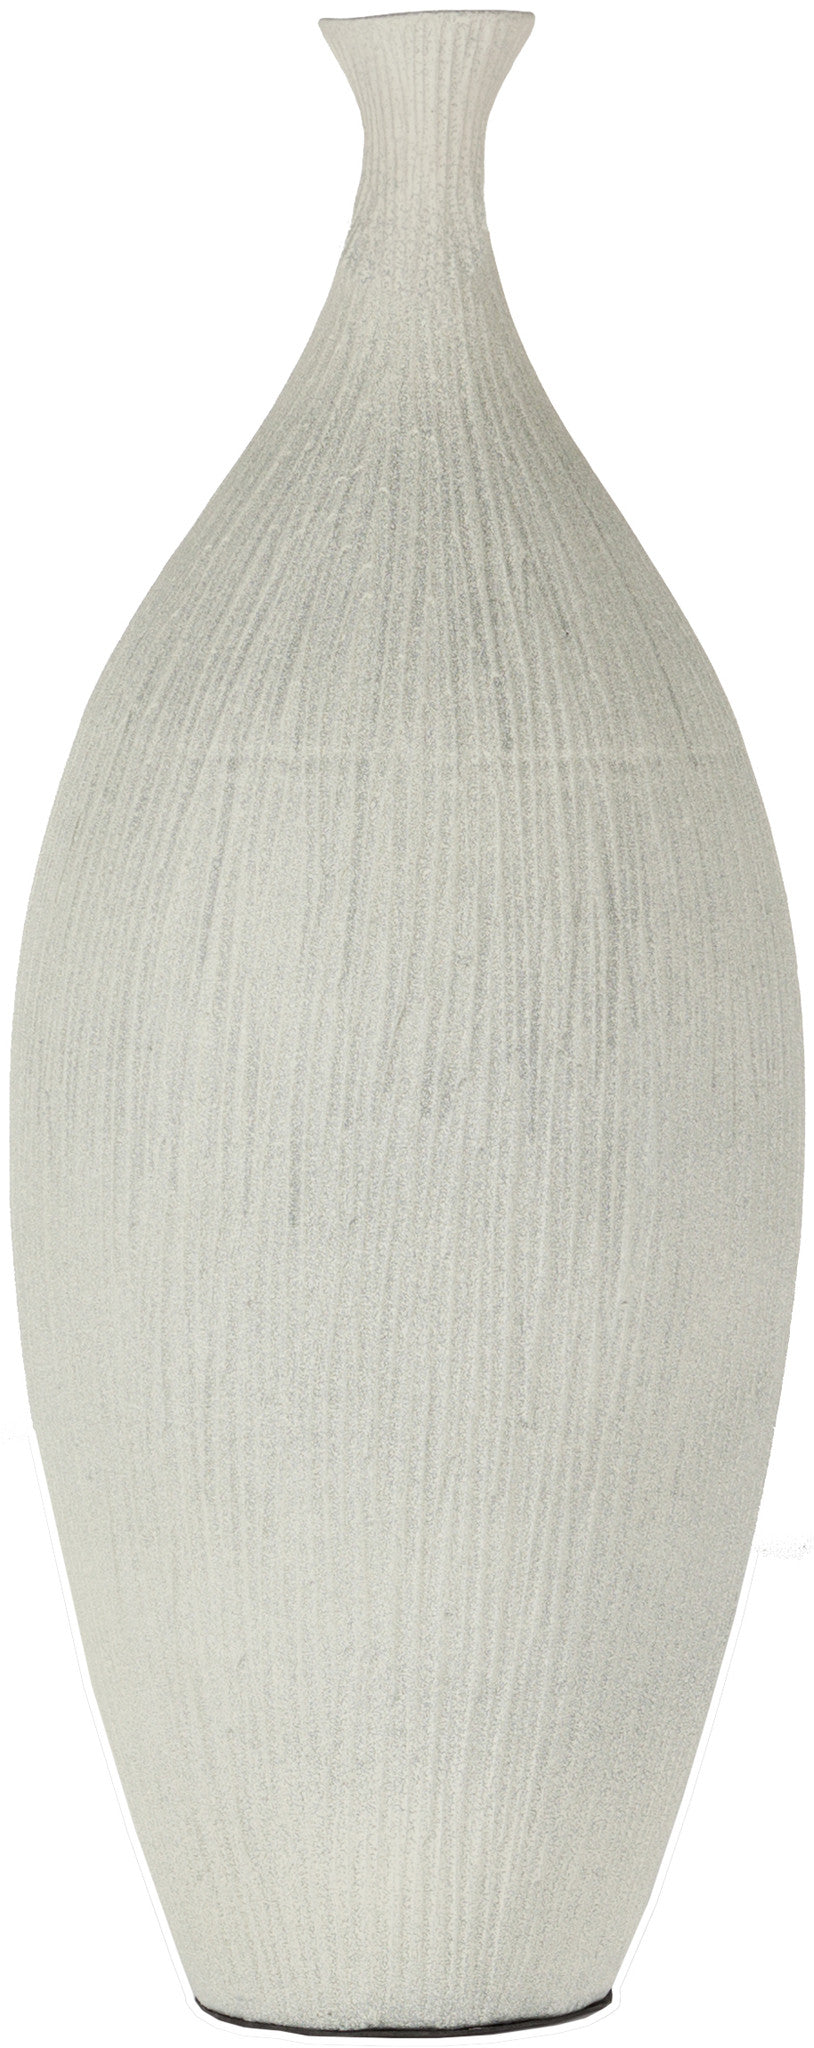 Surya Natural NCV-852 Vase main image